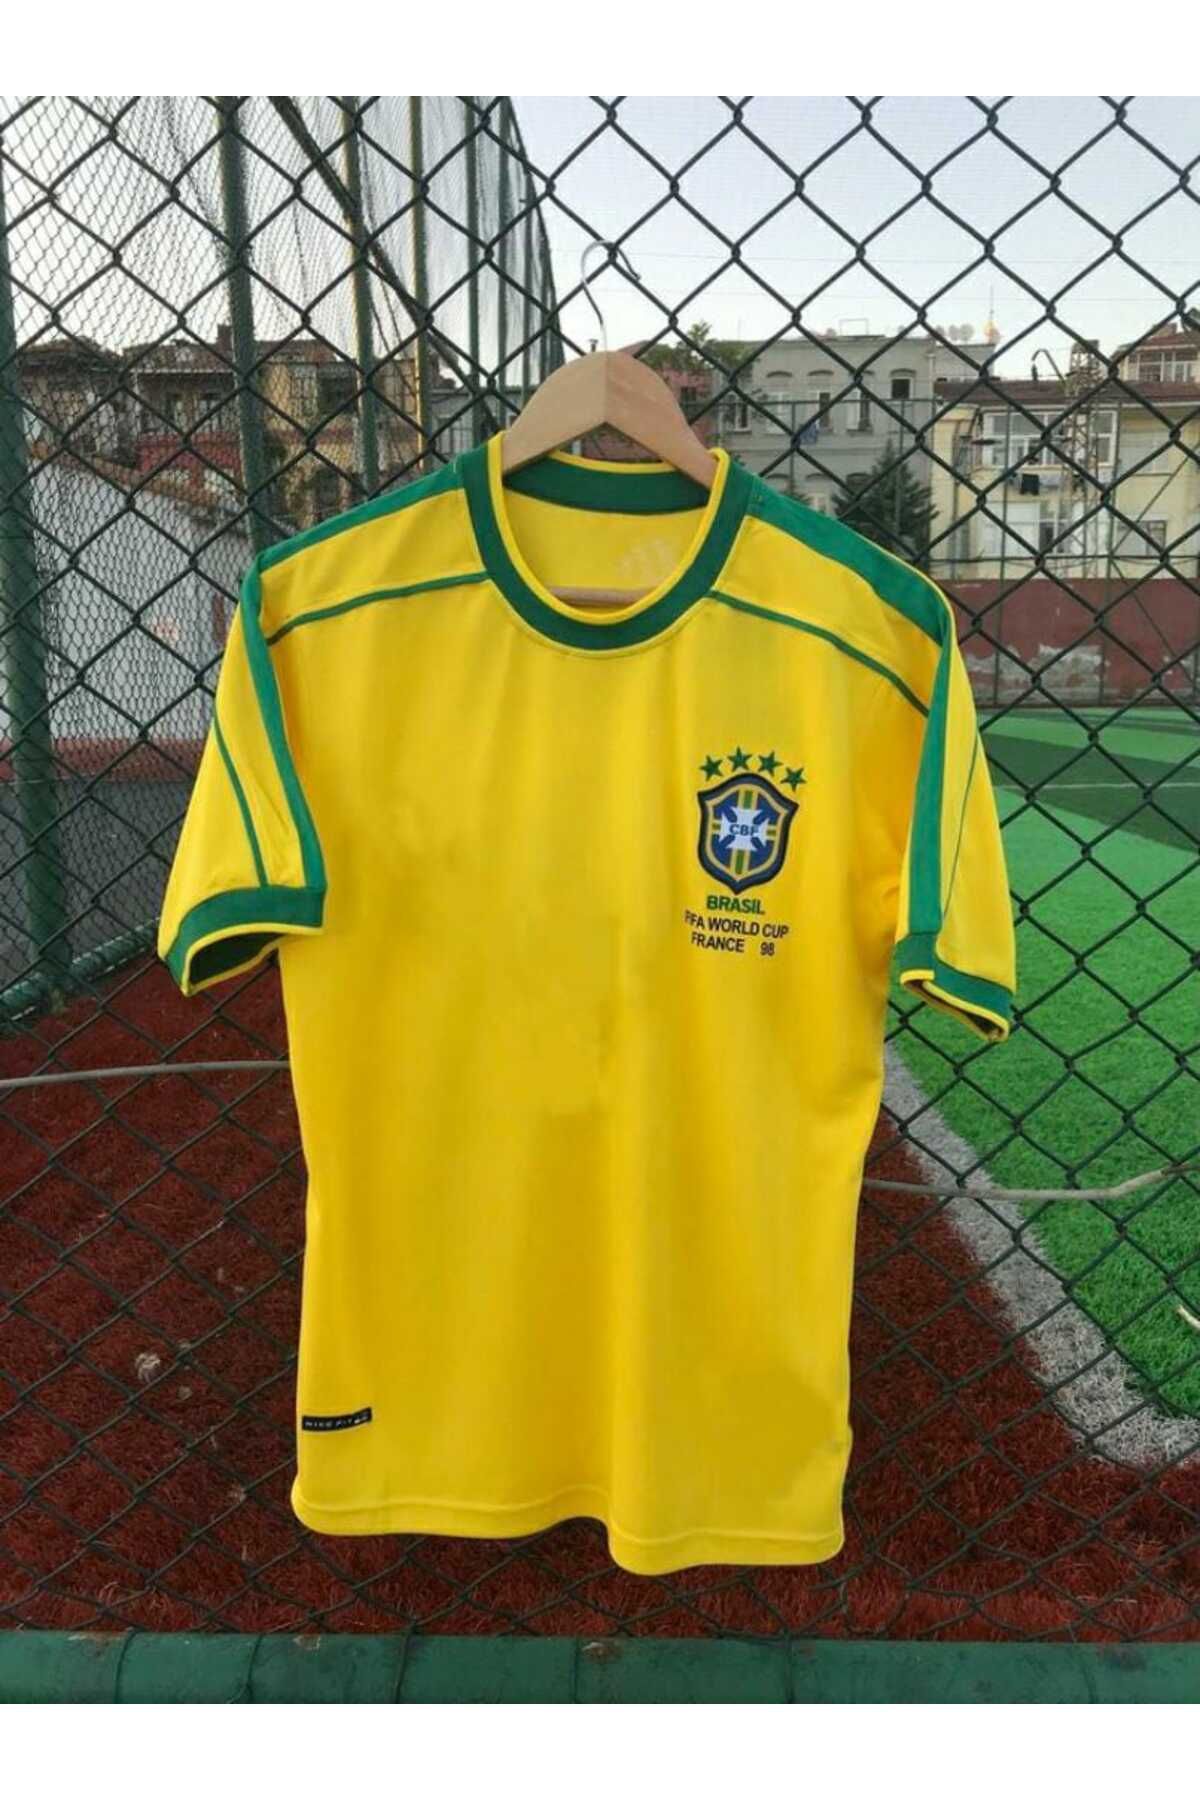 BYSPORTAKUS Brezilya Milli Takımı 98 Dünya Kupası Alex De Souza Nostalji Forması